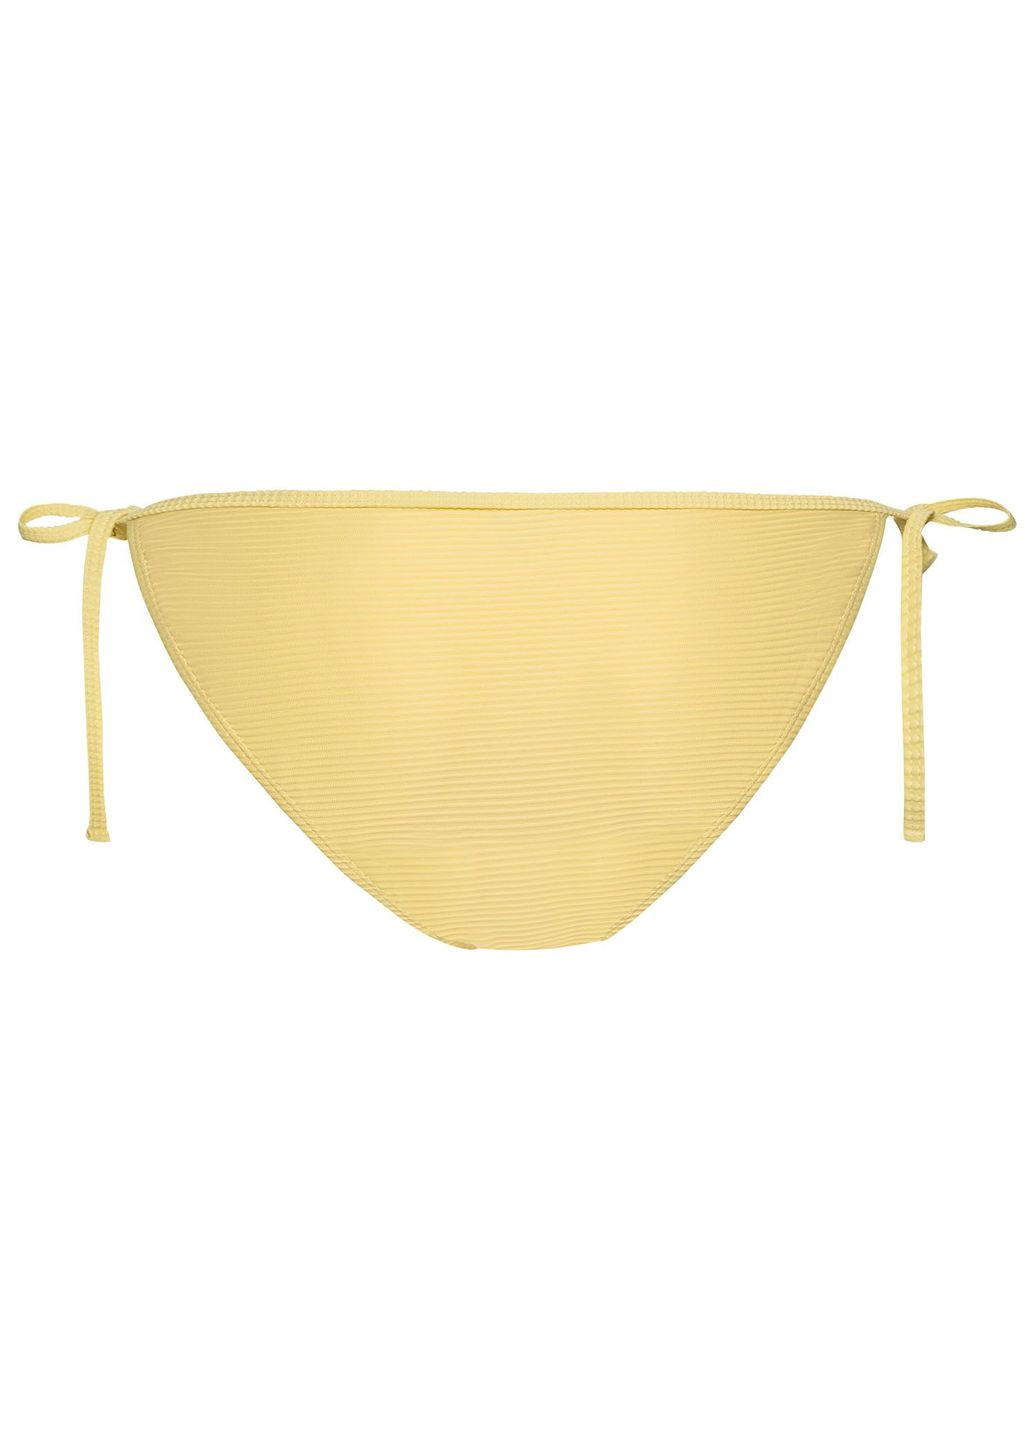 Жовтий купальник роздільний на підкладці для жінки lycra® 348526 жовтий бікіні Esmara